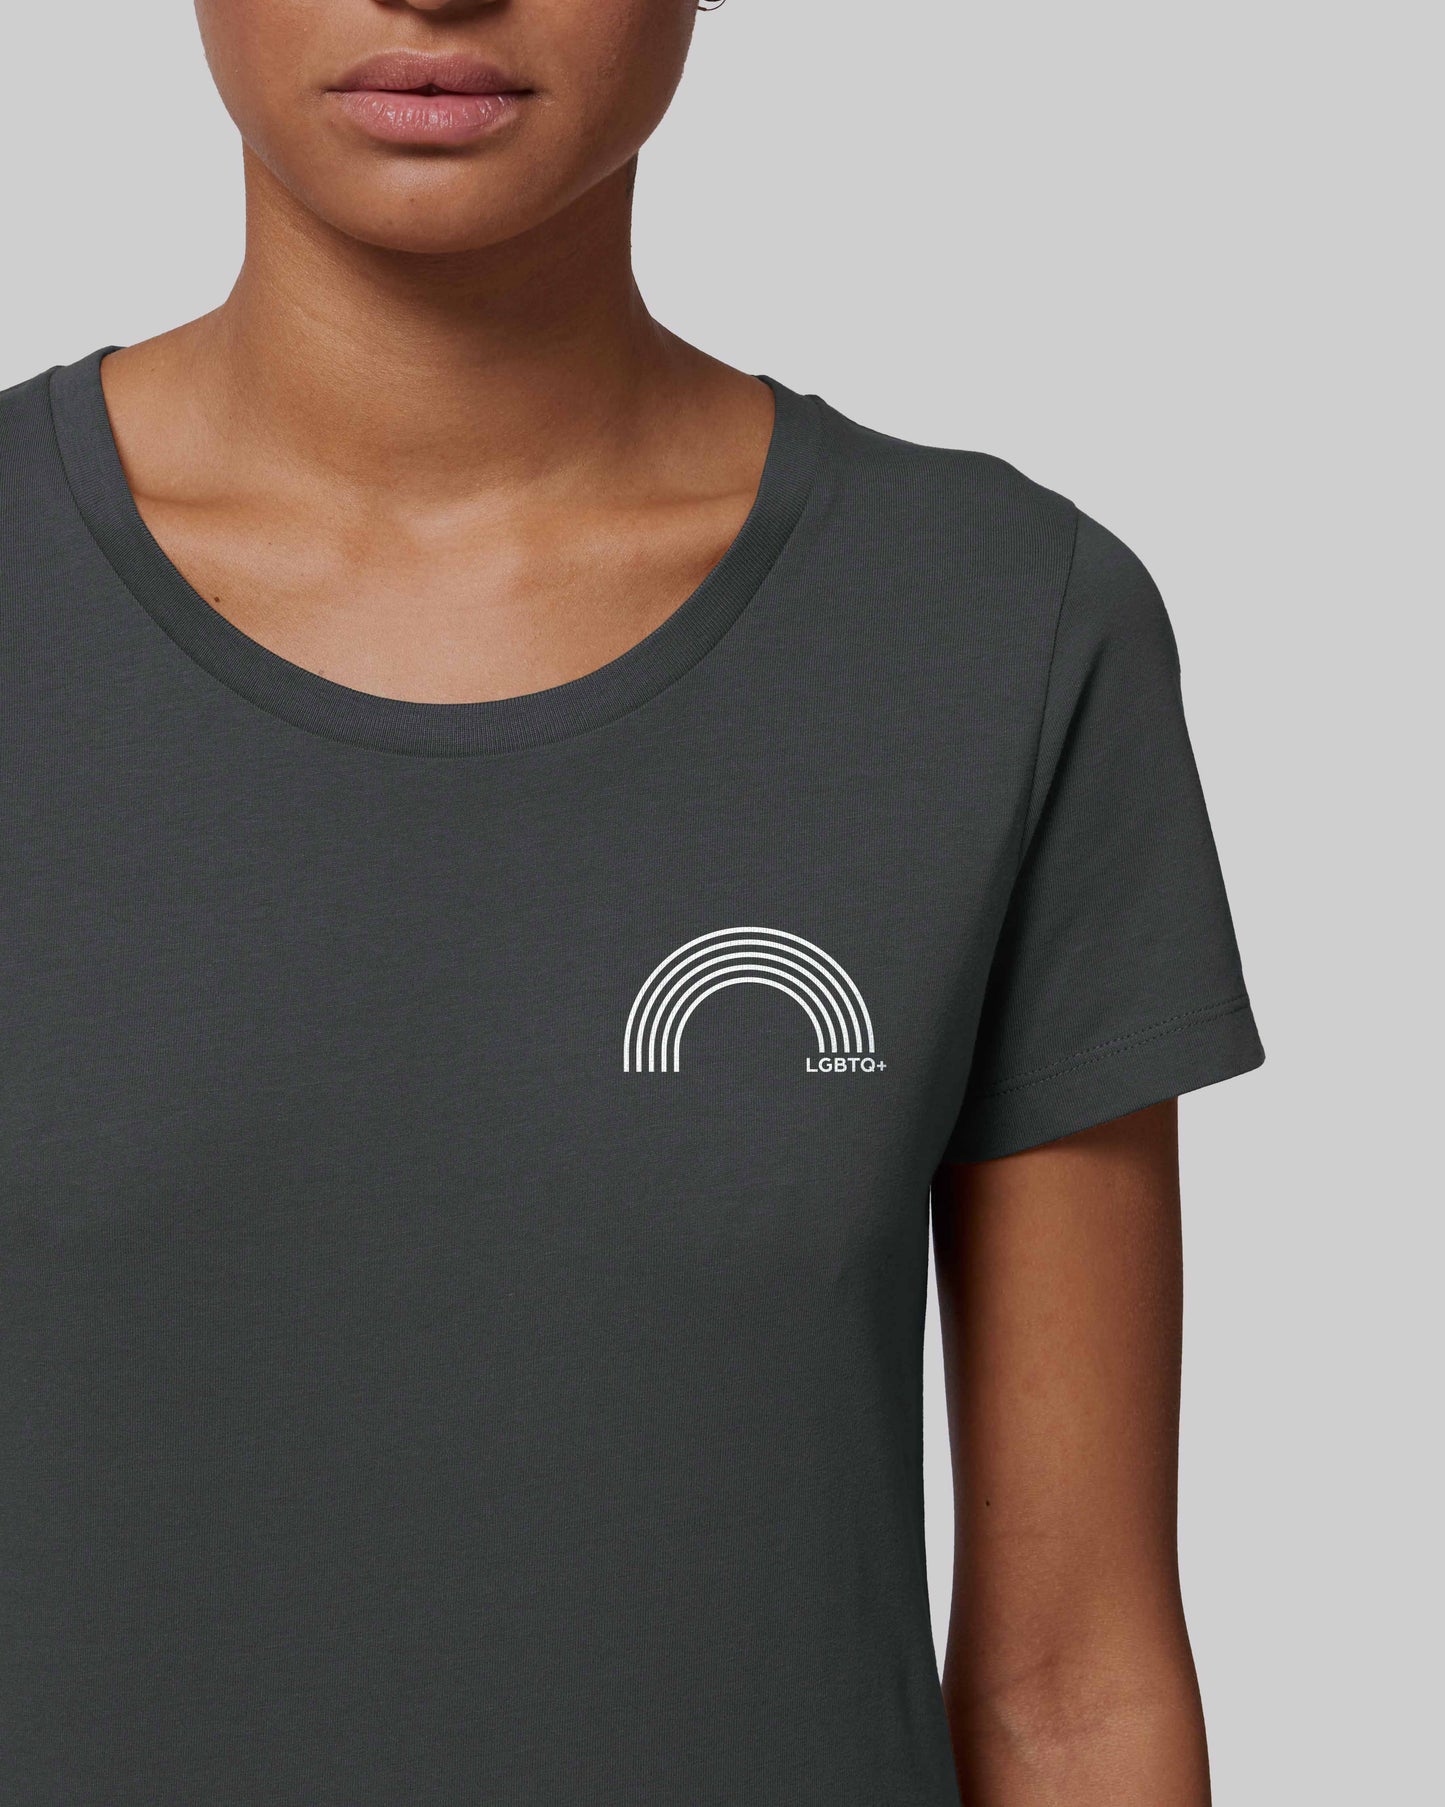 EINHORST® Organic Shirt tailliert in "Anthracite" mit dem Motiv "lgbtq+ Regenbogen" in der Kombination weißer Regenbogen mit weißer Schrift, Bild von weiblicher Person mit Shirt